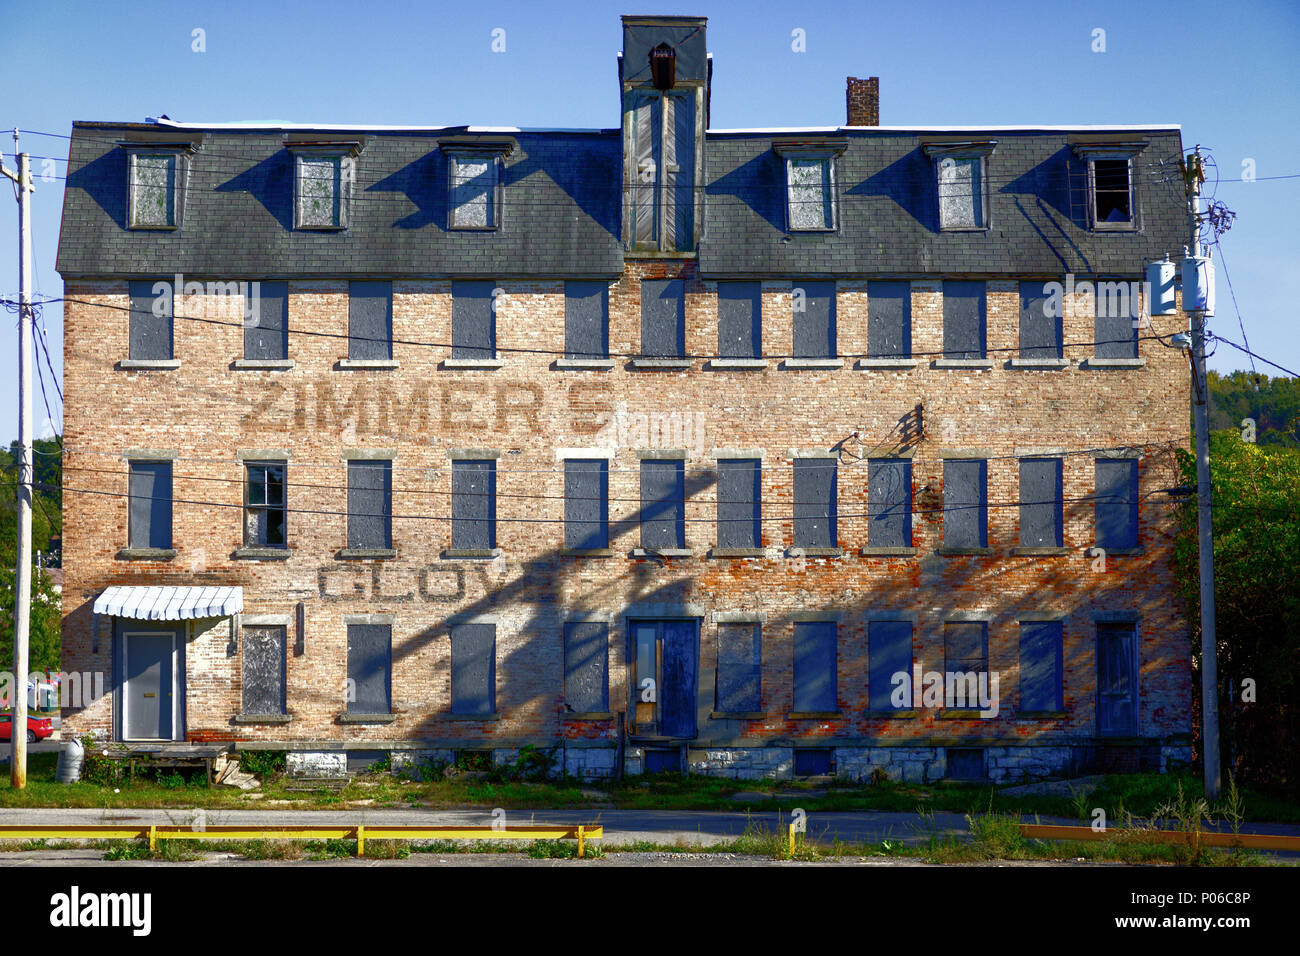 GLOVERSVILLE, NY/USA - OKTOBER 3, 2017: Die Zimmer ist eine von vielen Verstorbenen Handschuh Entscheidungsträger in Gloversville, Fulton County, New York. Stockfoto